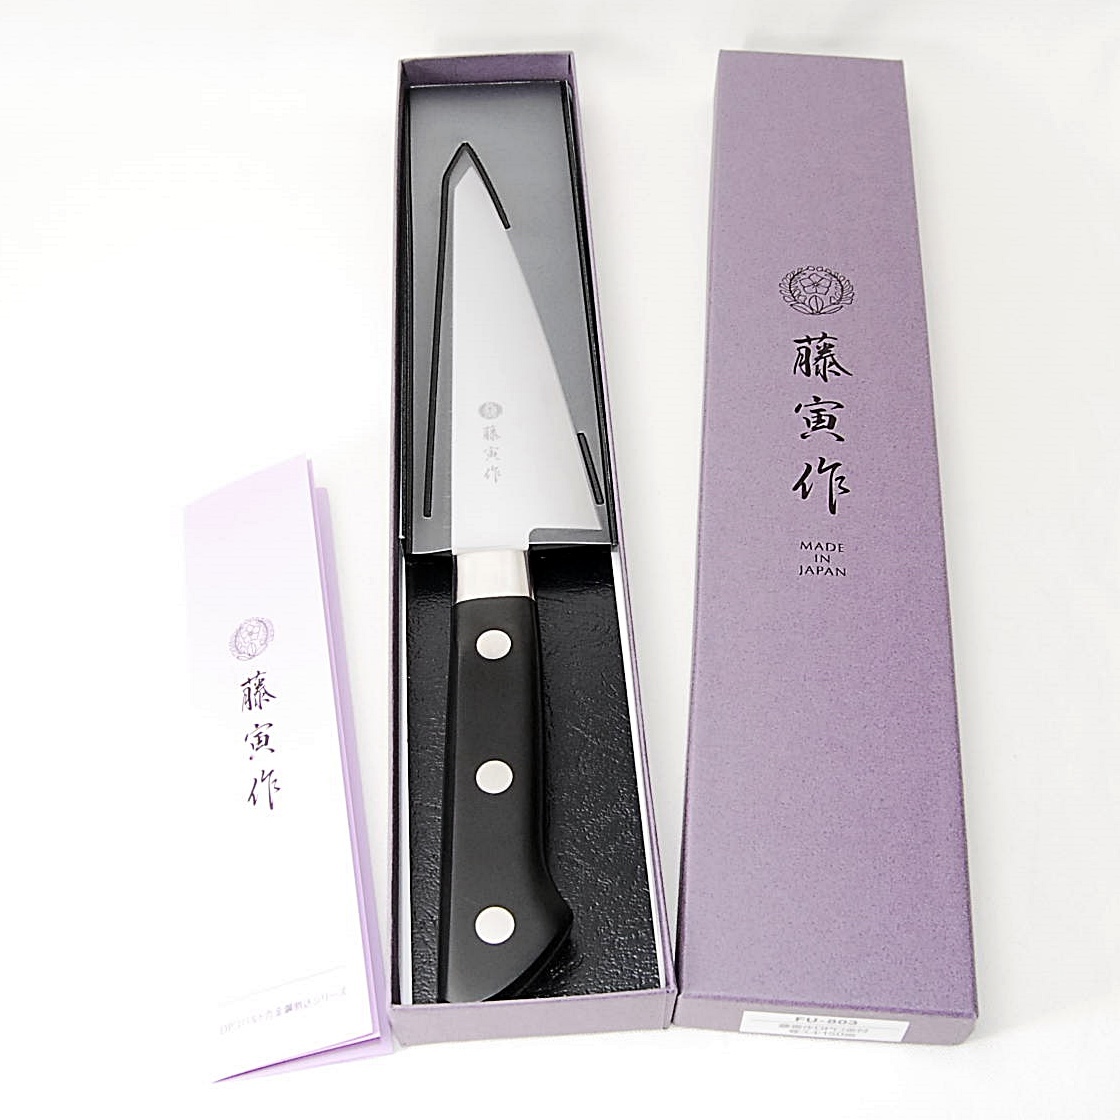 [Плата за доставку 230 иен] Fujiro Fujiro Fujito DP навыки кости кухонный нож 150 мм японский нож FU-803 с краем с поваром профессионального кухонного ножа для кухни для кухни для кухни для кухни